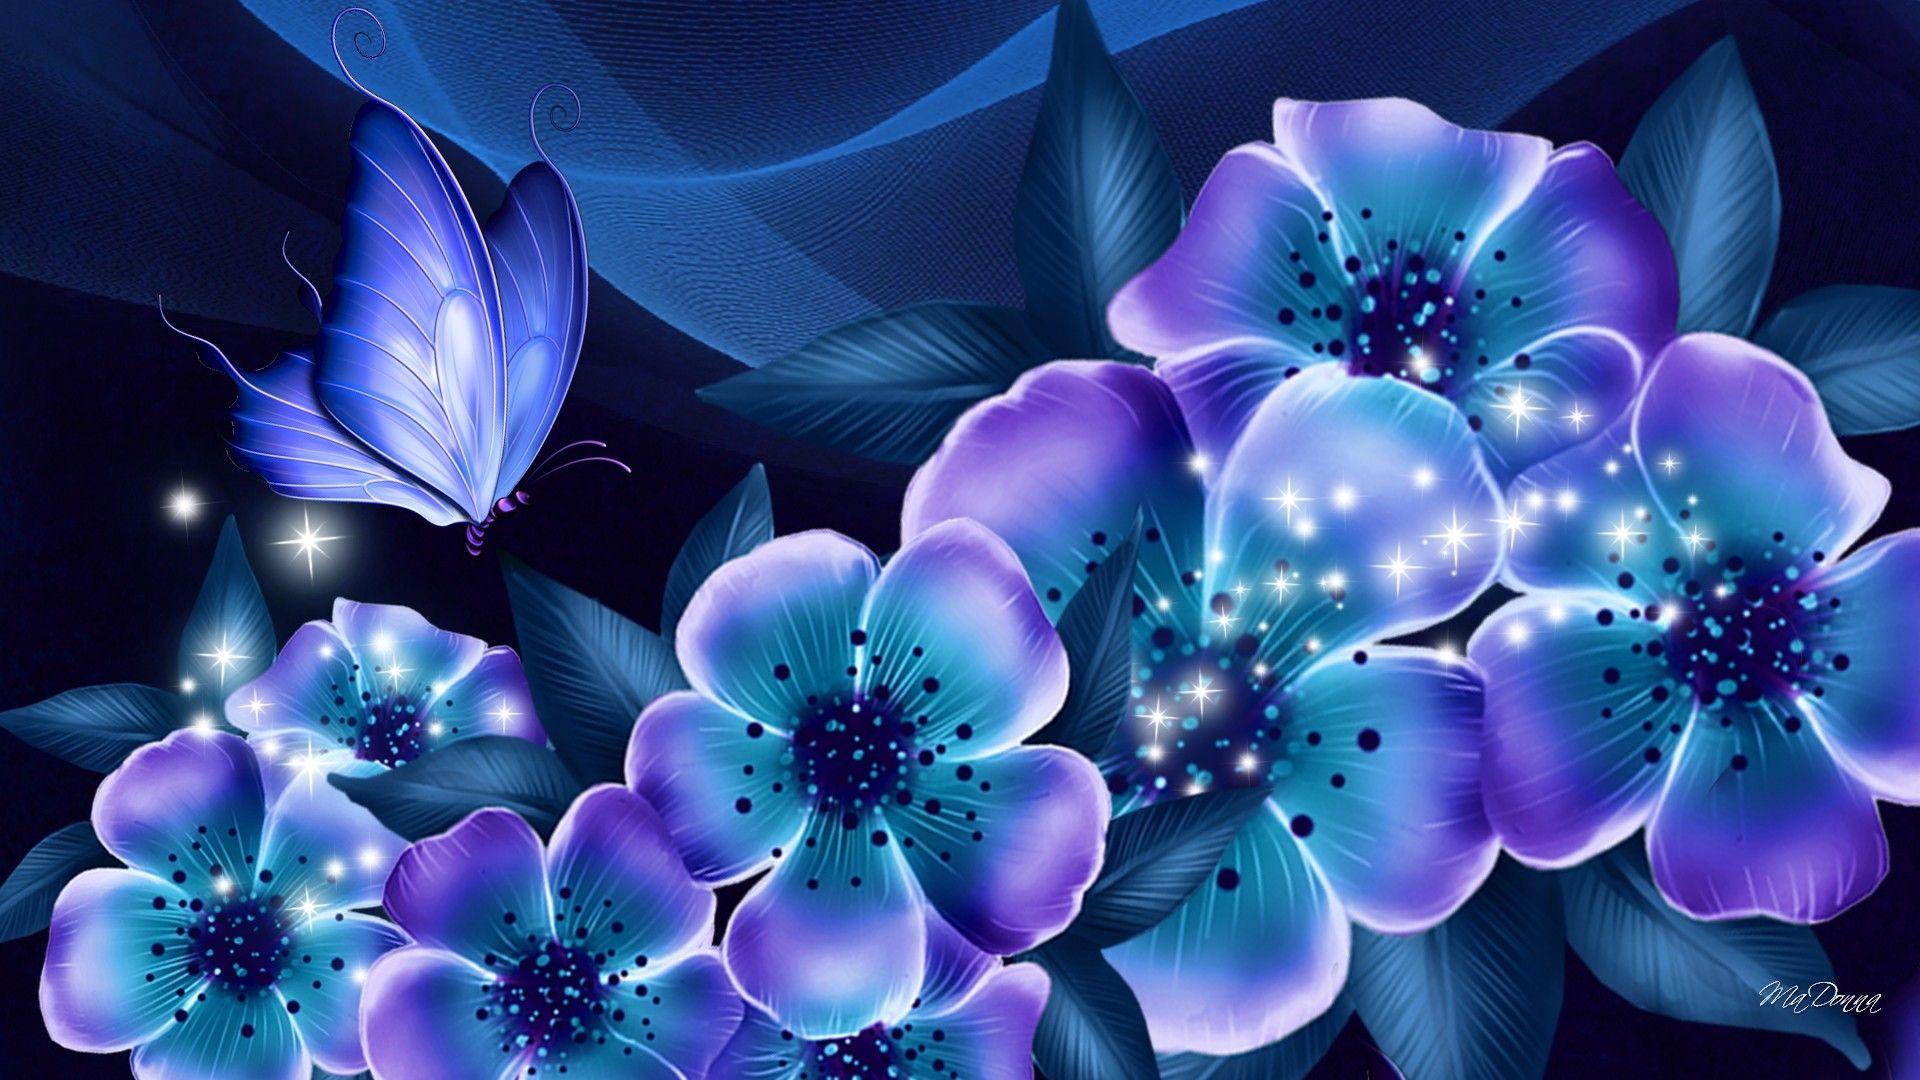 Flower: Nights Blue Dreams Flowers Butterfly Silk Shine Lavender